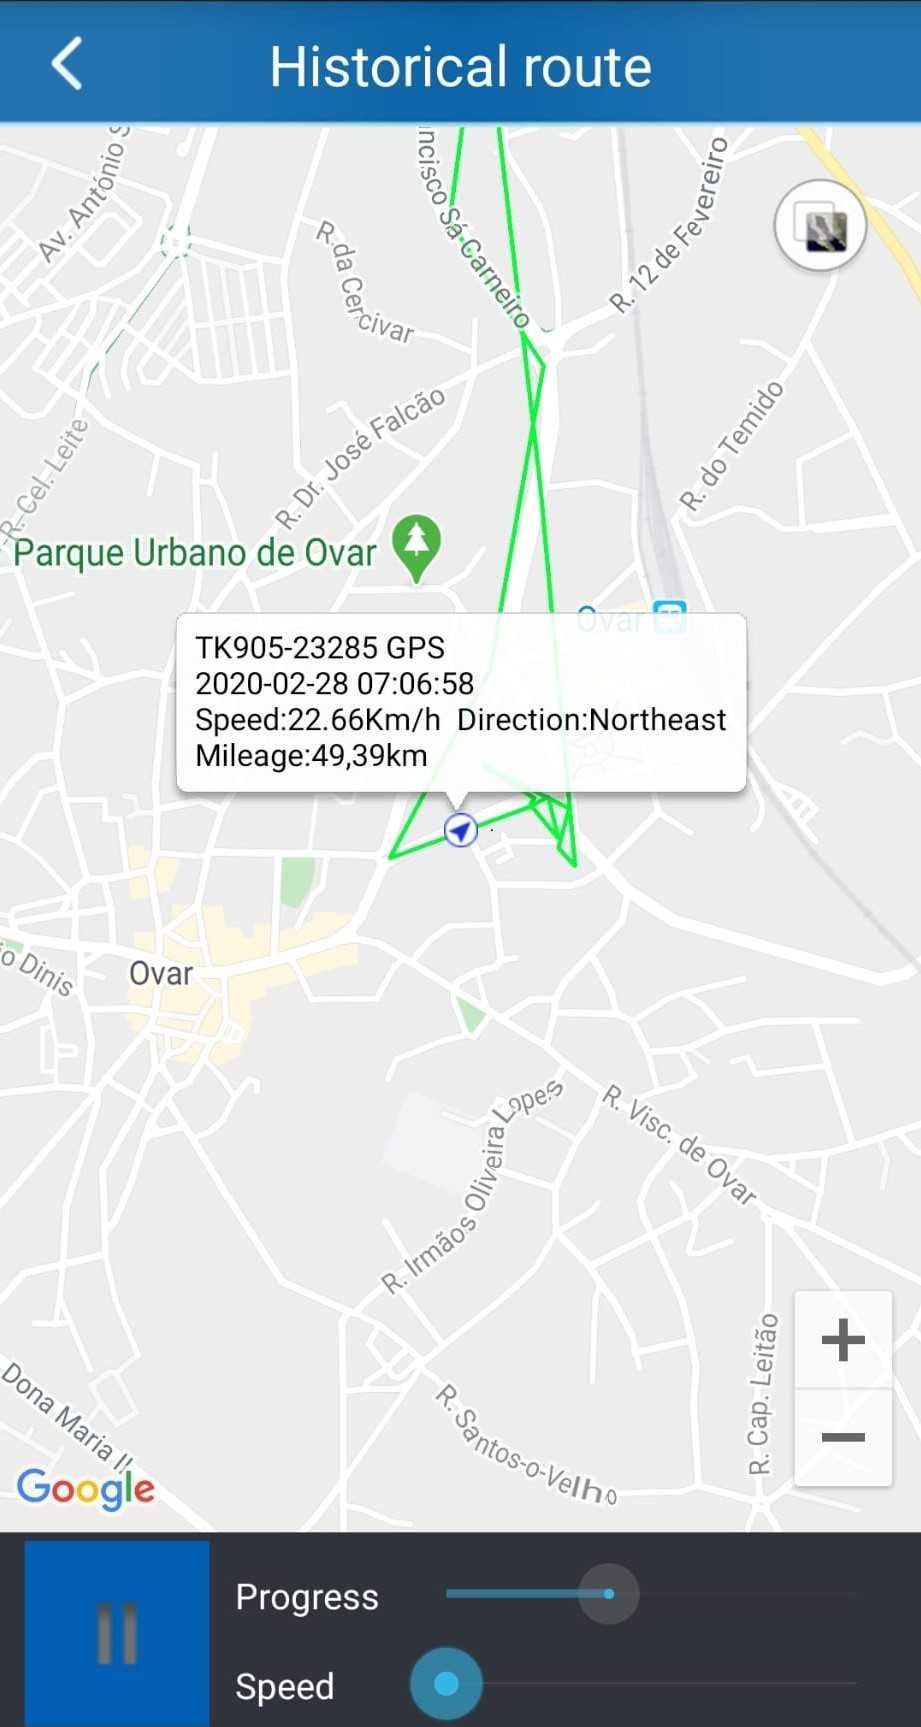 [NOVO] Localizador GPS TRACKER TKSTAR TK905 [AUTONOMIA 1 a 3 MESES]